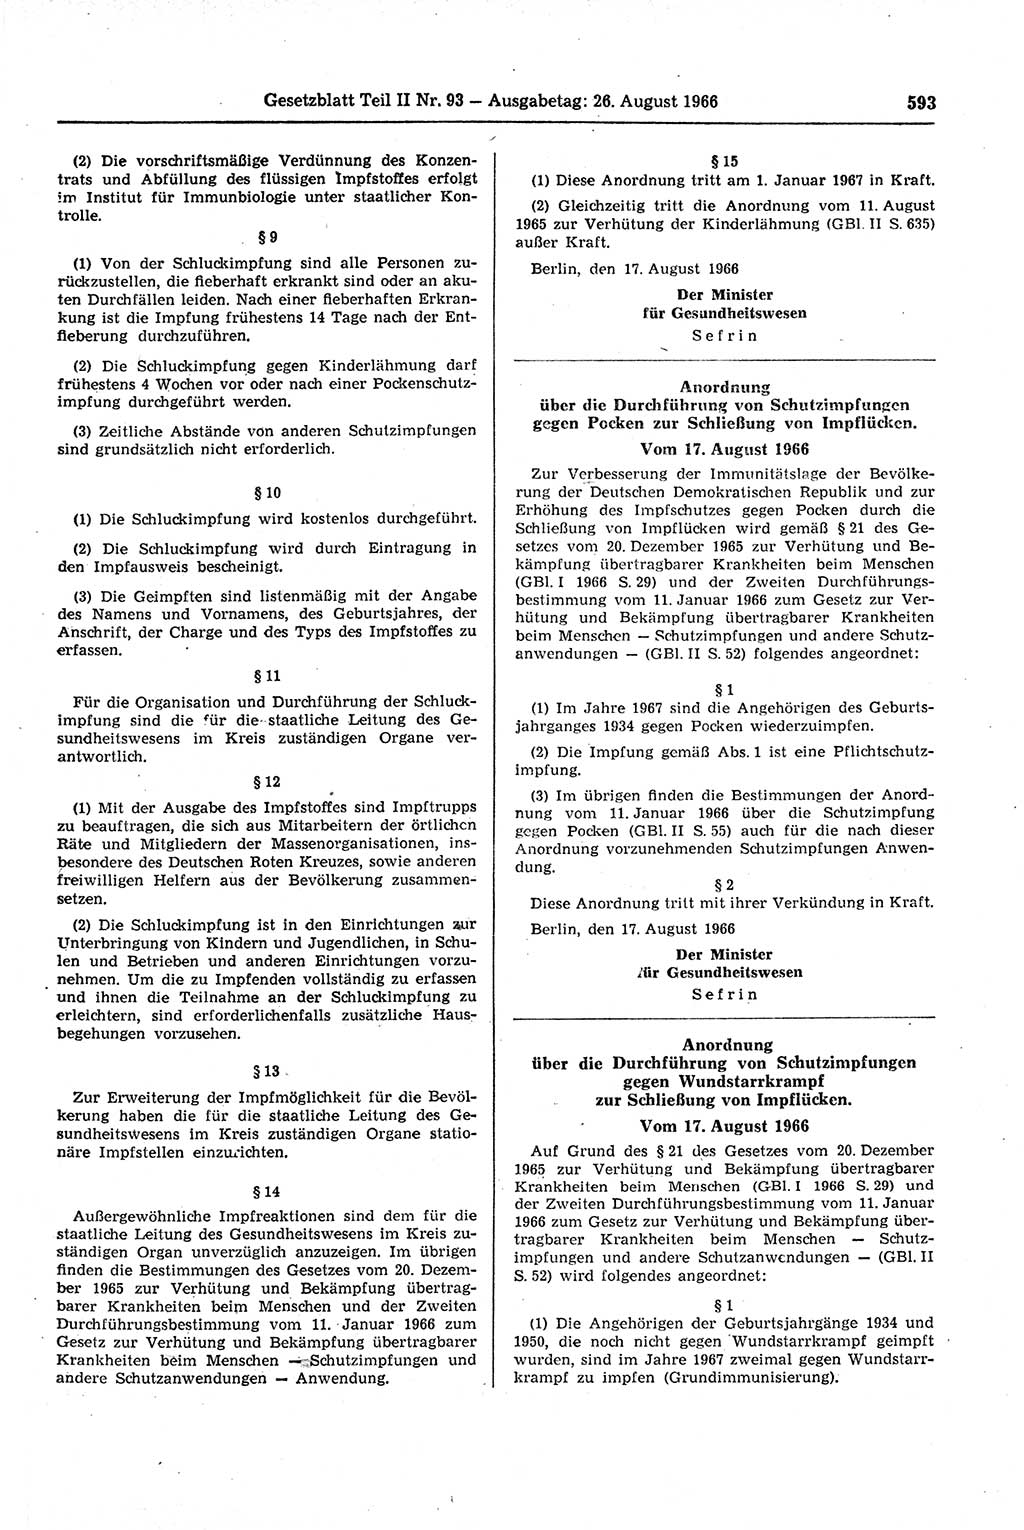 Gesetzblatt (GBl.) der Deutschen Demokratischen Republik (DDR) Teil ⅠⅠ 1966, Seite 593 (GBl. DDR ⅠⅠ 1966, S. 593)